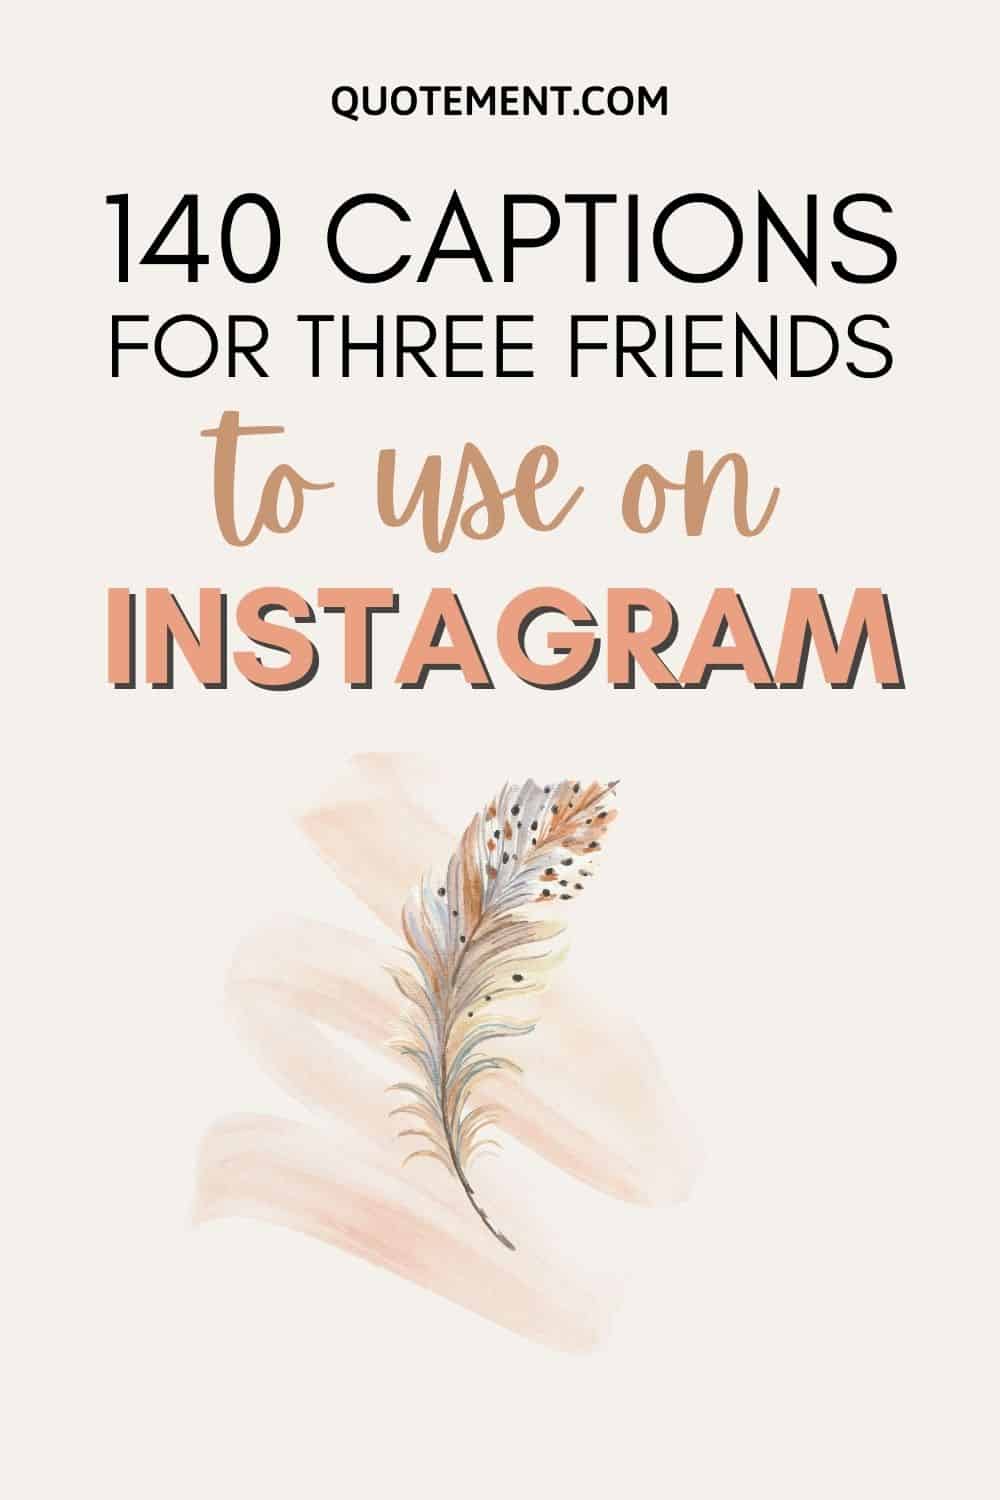 140 pies de foto para tres amigos en Instagram 